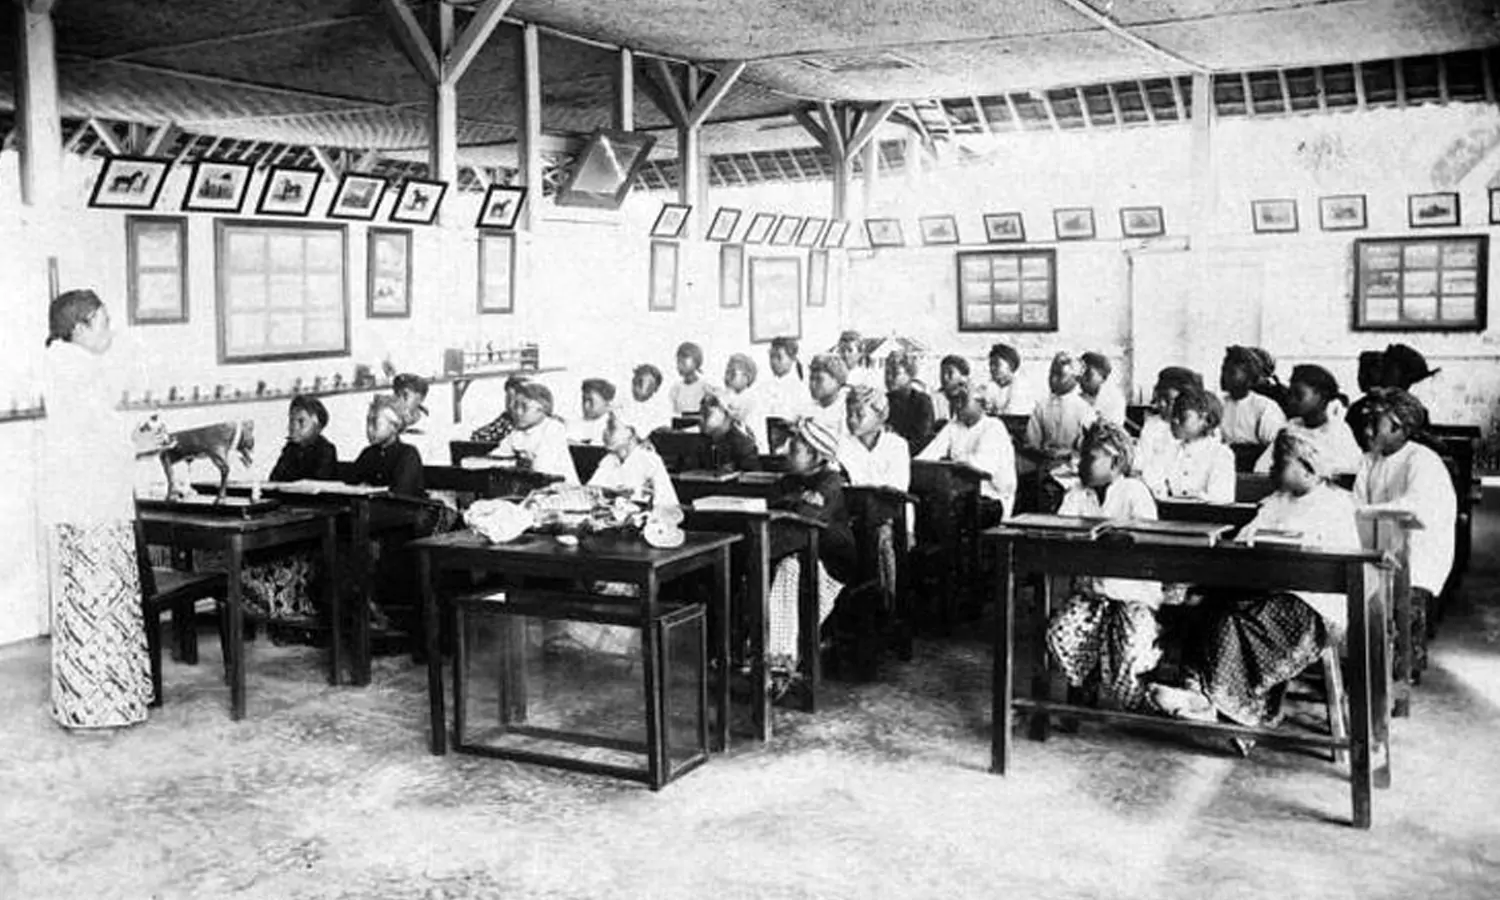 Mengenal Sekolah Sekolah di Zaman Kolonial Belanda